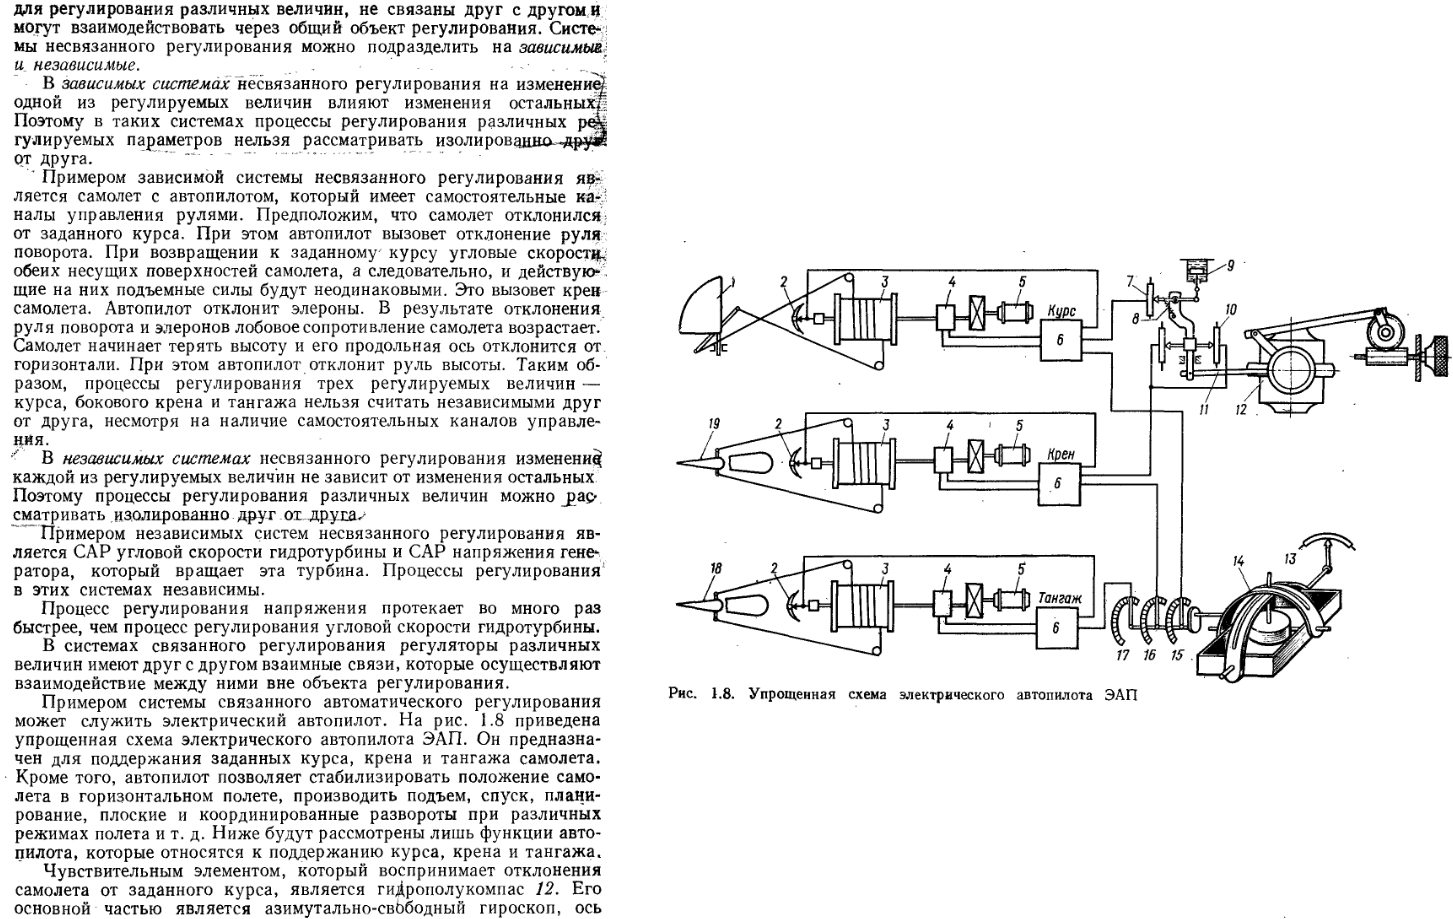 Основы теории и элементы систем автоматического регулирования. 1985